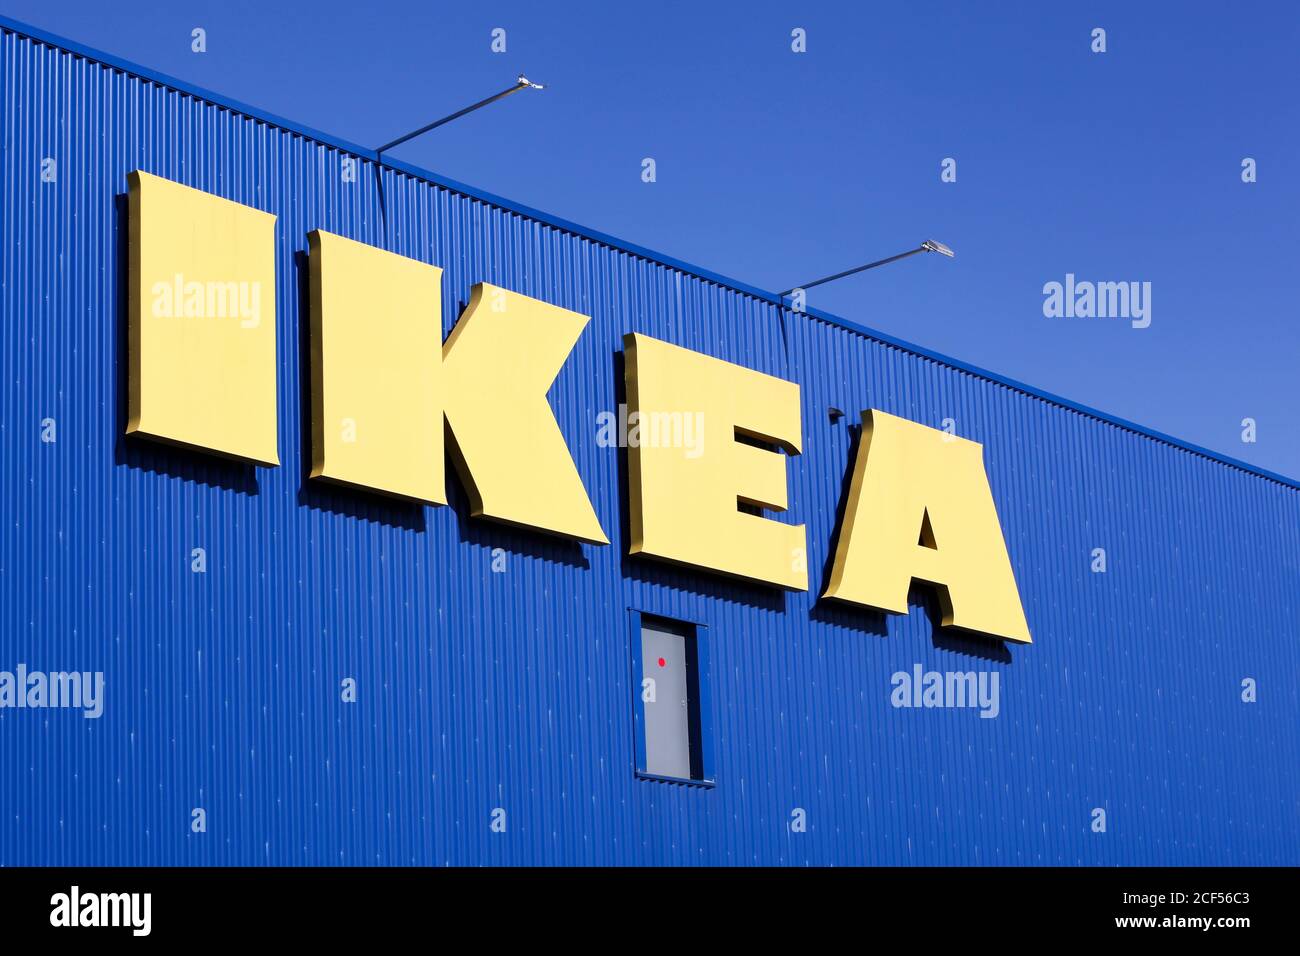 Roanne, France - 5 juillet 2020 : magasin IKEA en France. IKEA est un groupe multinational d'entreprises qui conçoit et vend des meubles prêts à assembler Banque D'Images